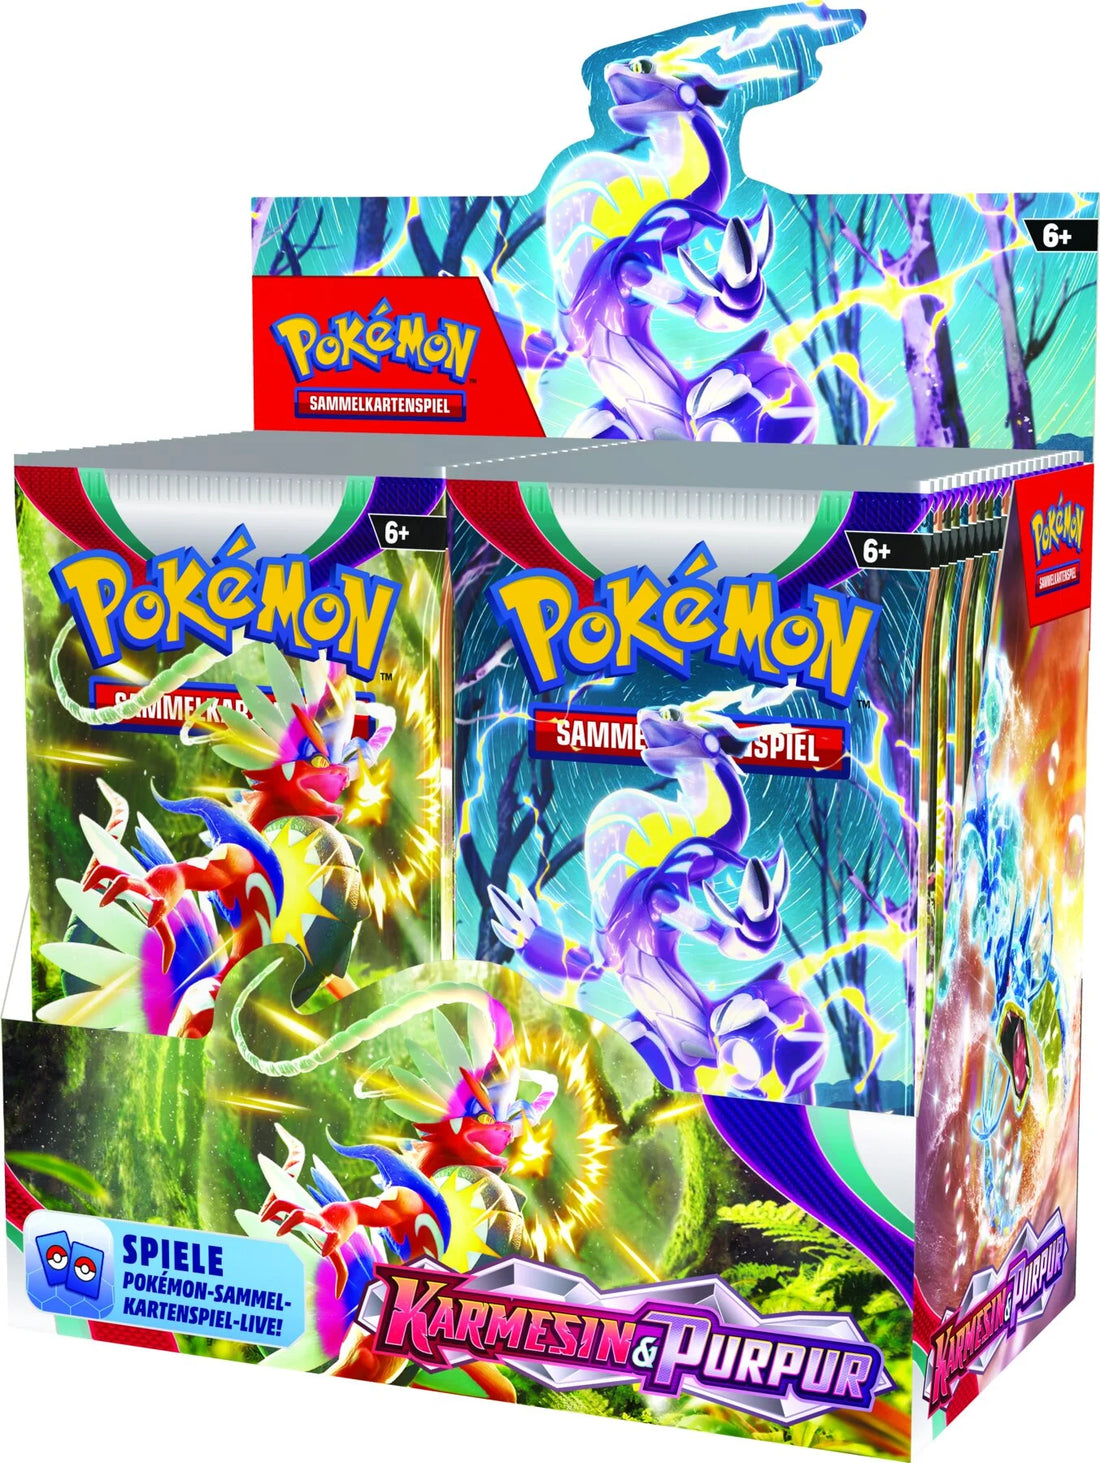 Pokémon Sammelkarten Karmesin &amp; Purpur Booster Pack